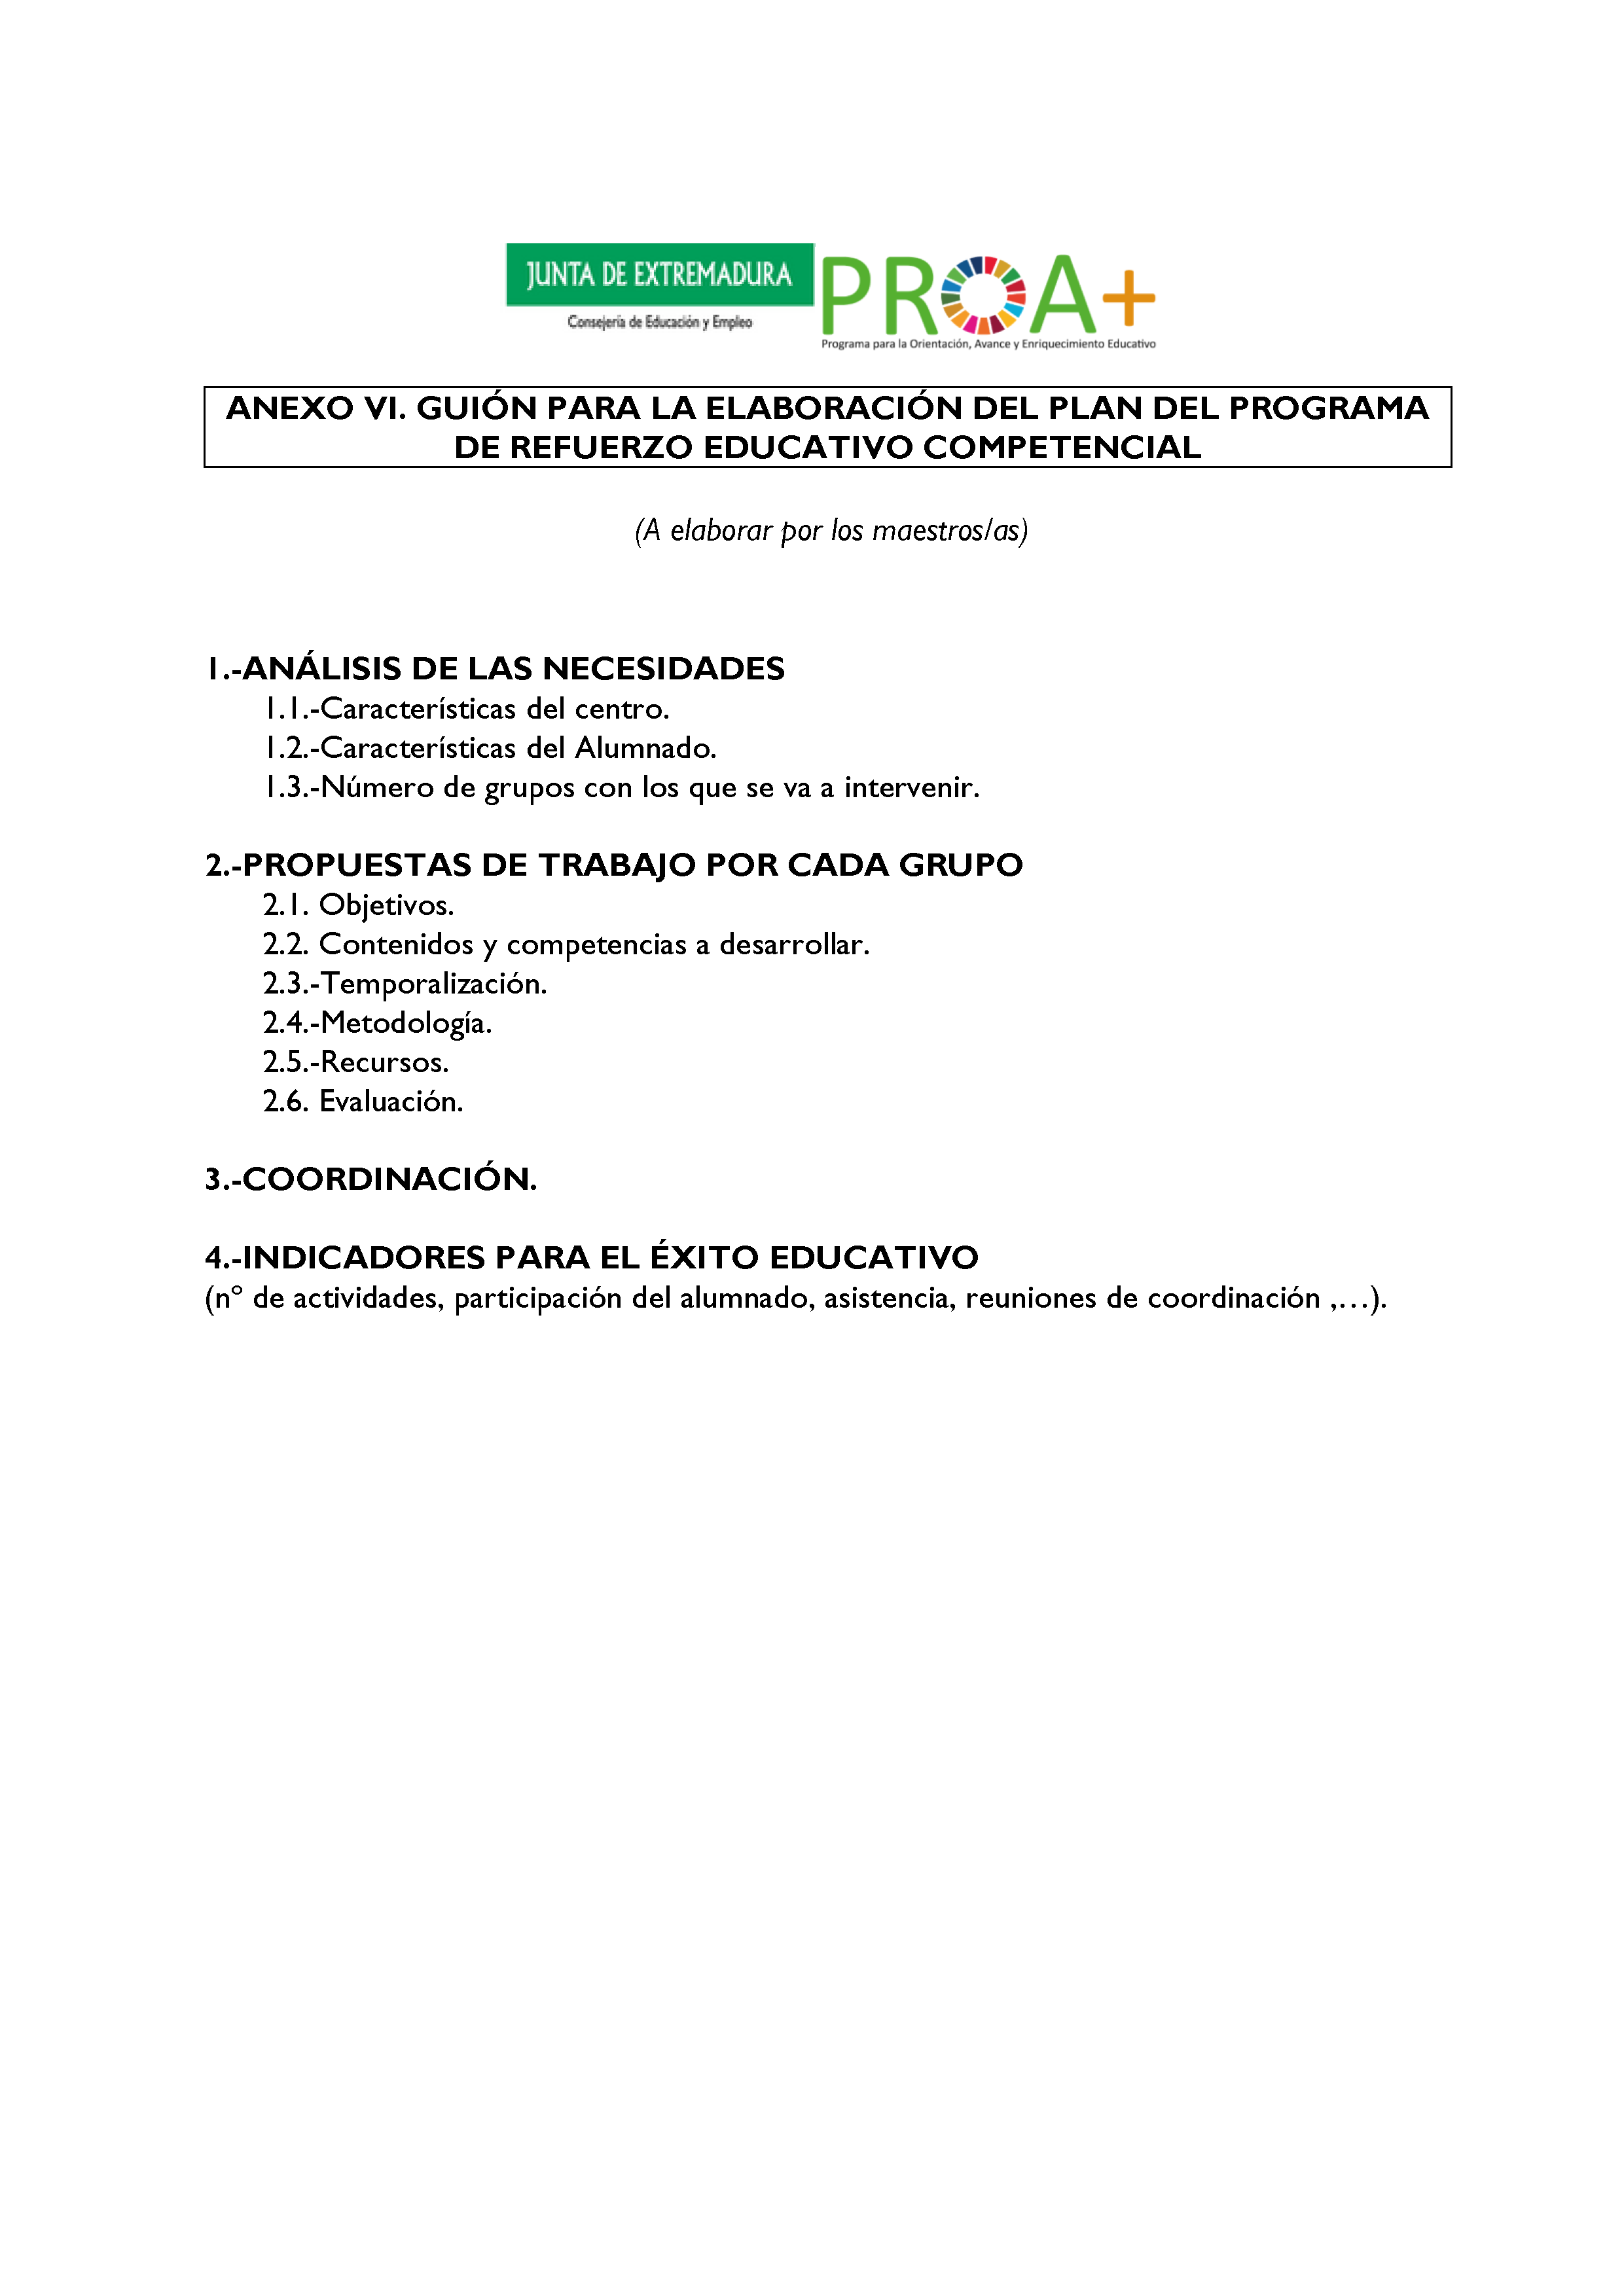 ANEXO I. ORGANIZACIÓN Y FUNCIONAMIENTO DE LOS PROGRAMAS DE REFUERZO EDUCATIVO COMPETENCIAL. Pag 9